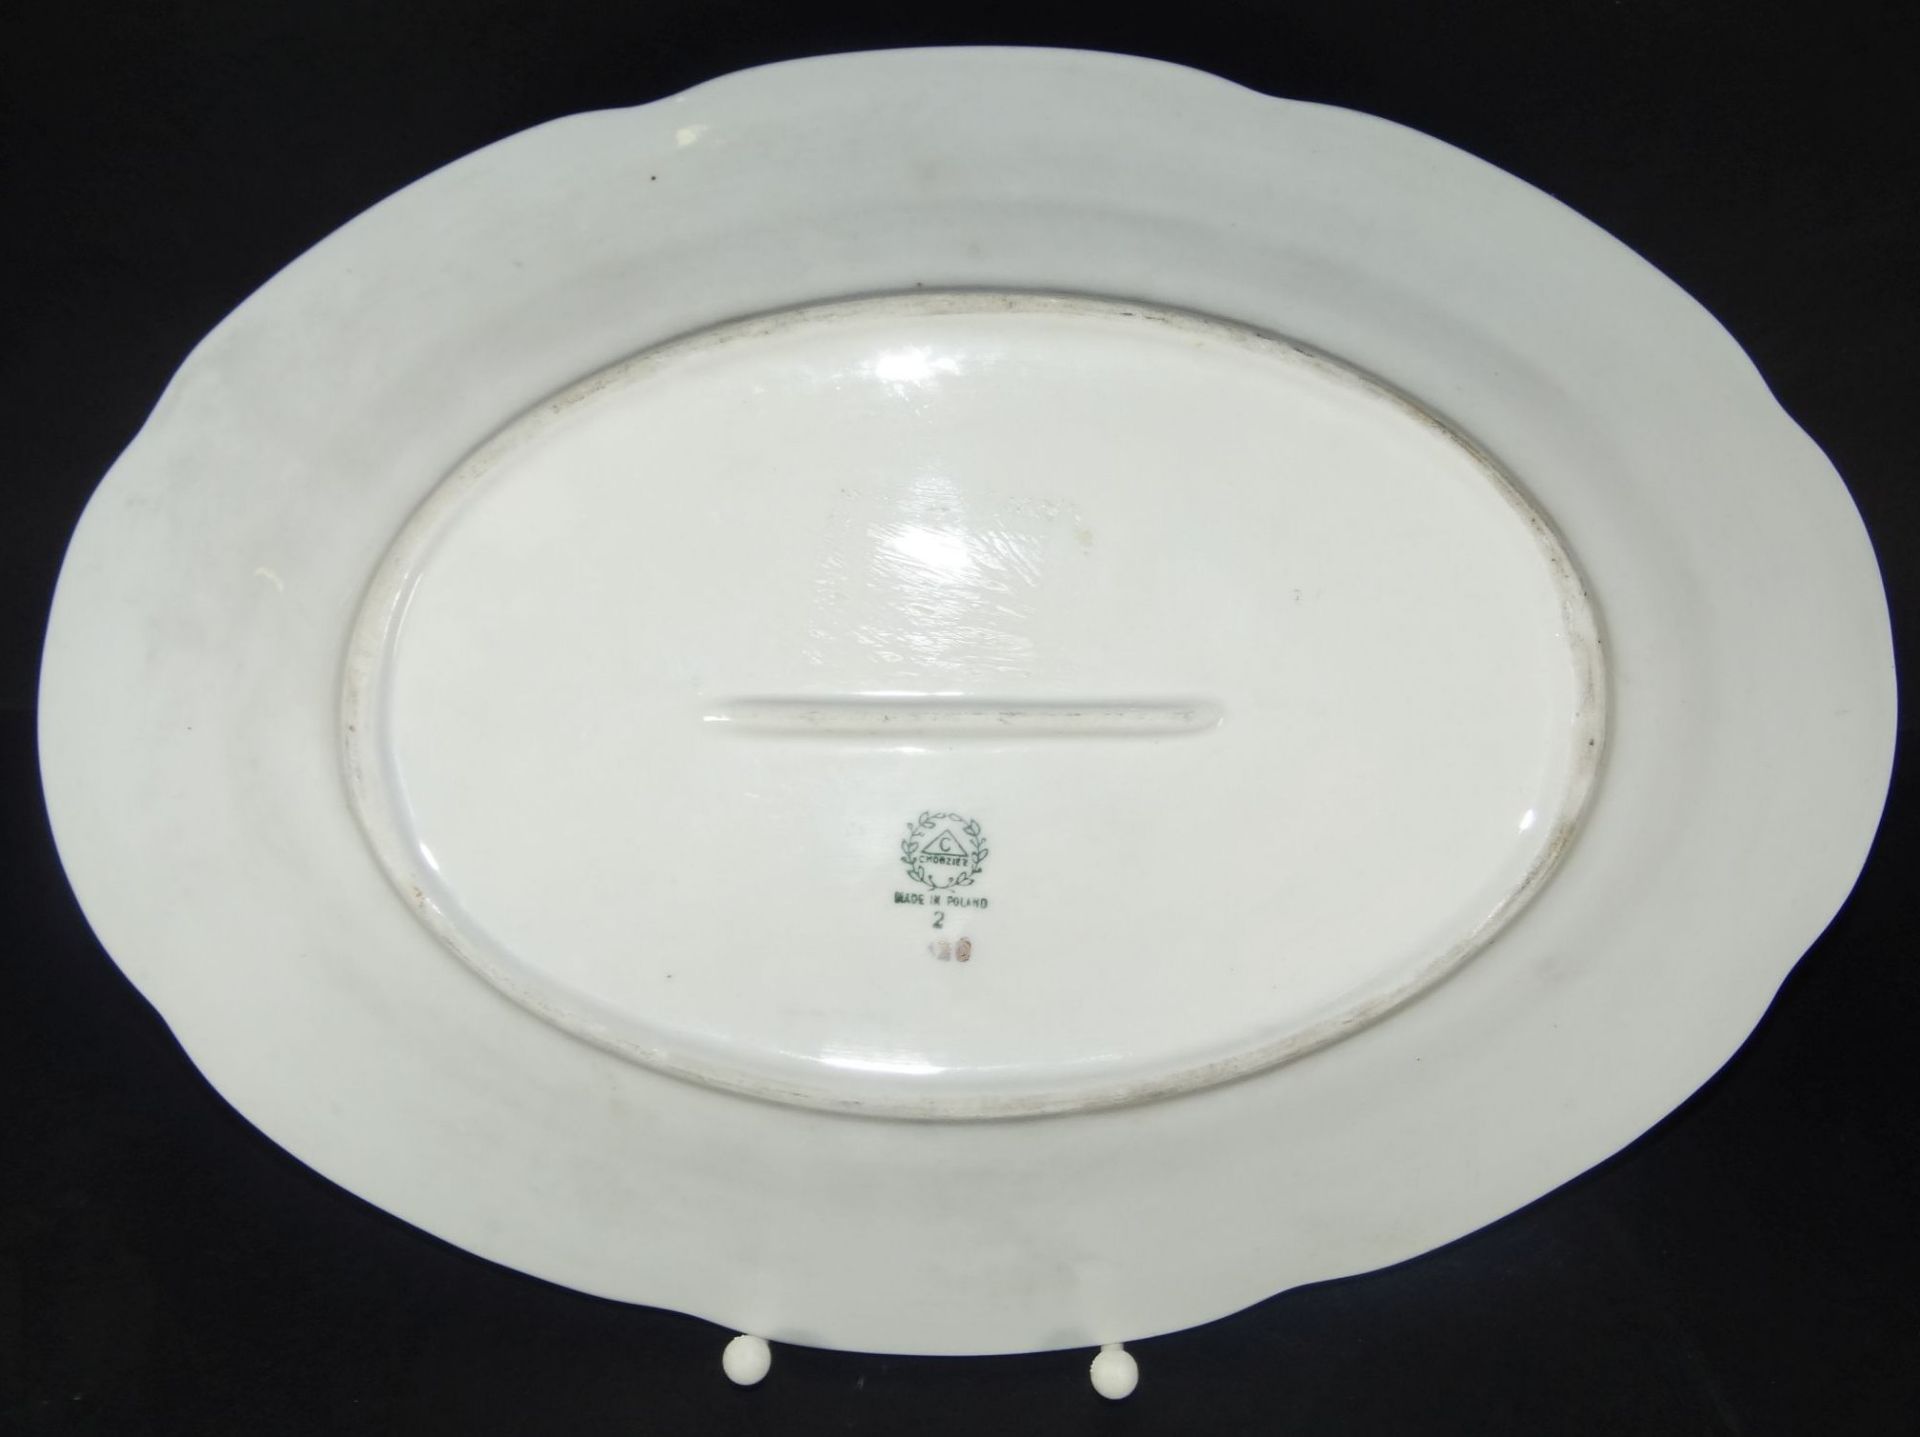 gr. ovale Schale, handbemalt mit Halbakt und sign. Knöt 91, auf polnischen Porzellan, 35x24 c- - - - Bild 4 aus 5